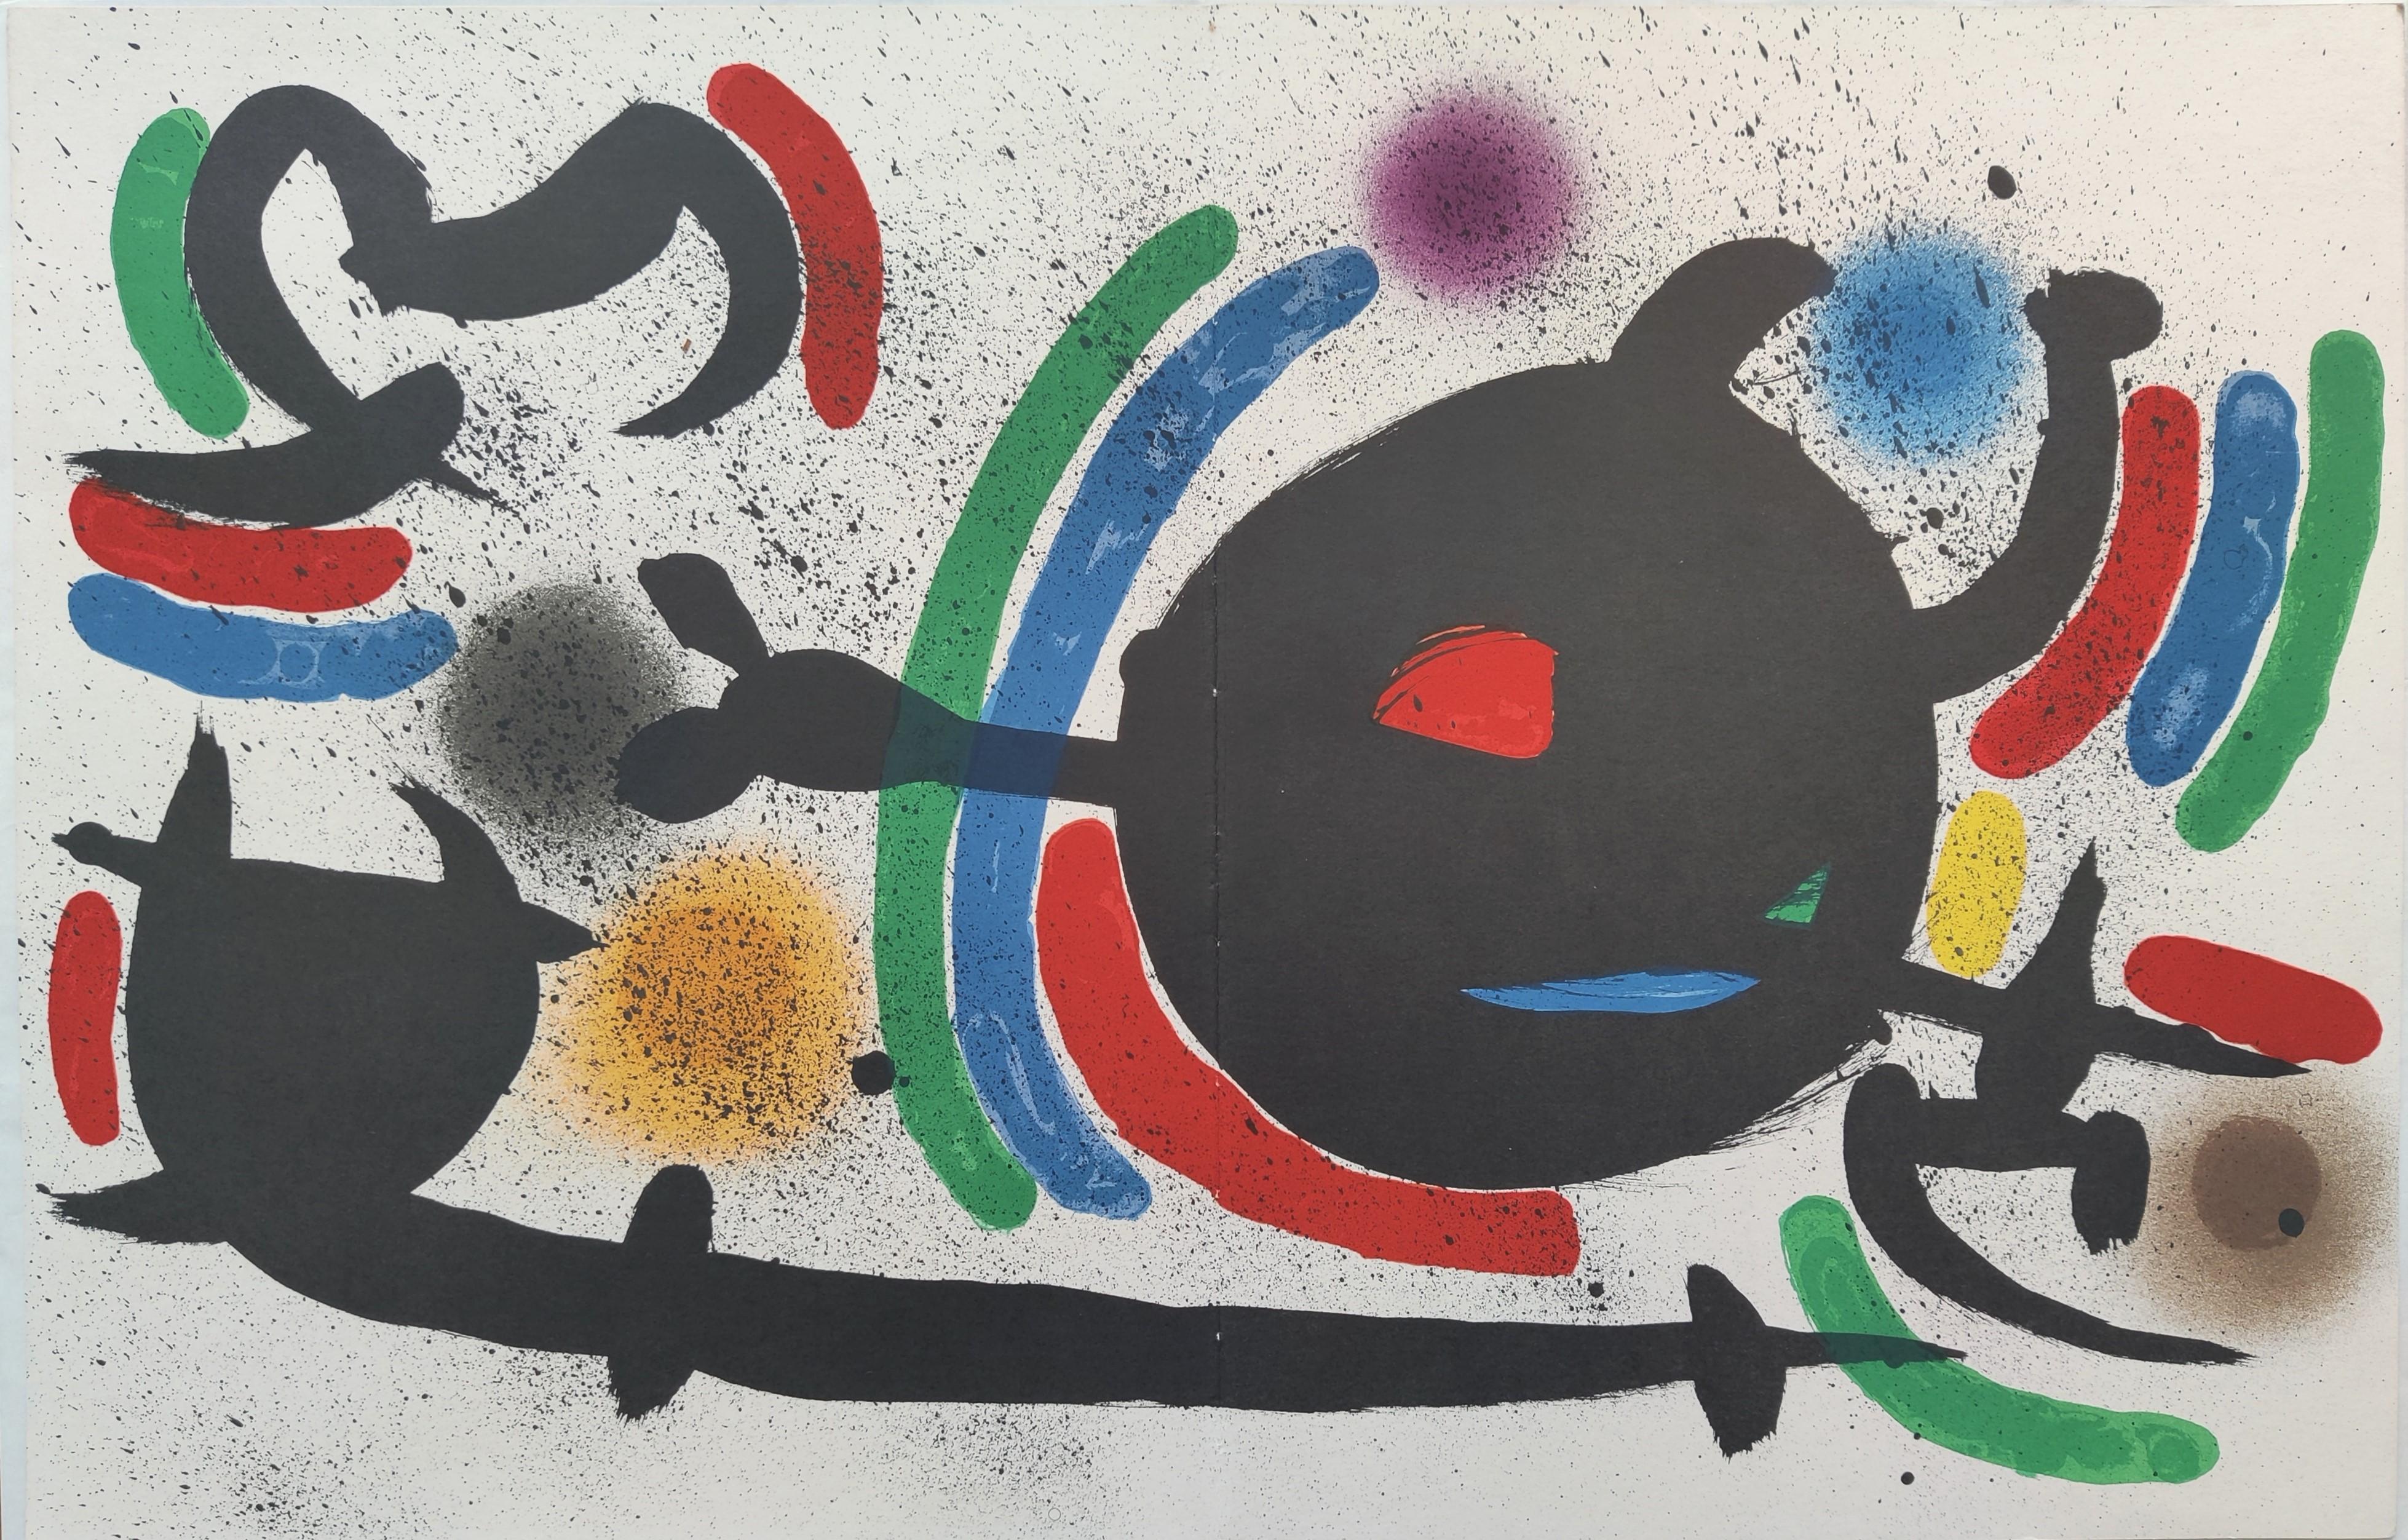 Joan Miró -- Lithographie originale X, 1972
Lithographie couleur
Éditeur : Ediciones Poligrafa, S.A., Barcelone
Catalogue : Mourlot 866
Taille : 33 × 50 cm 
Non signé